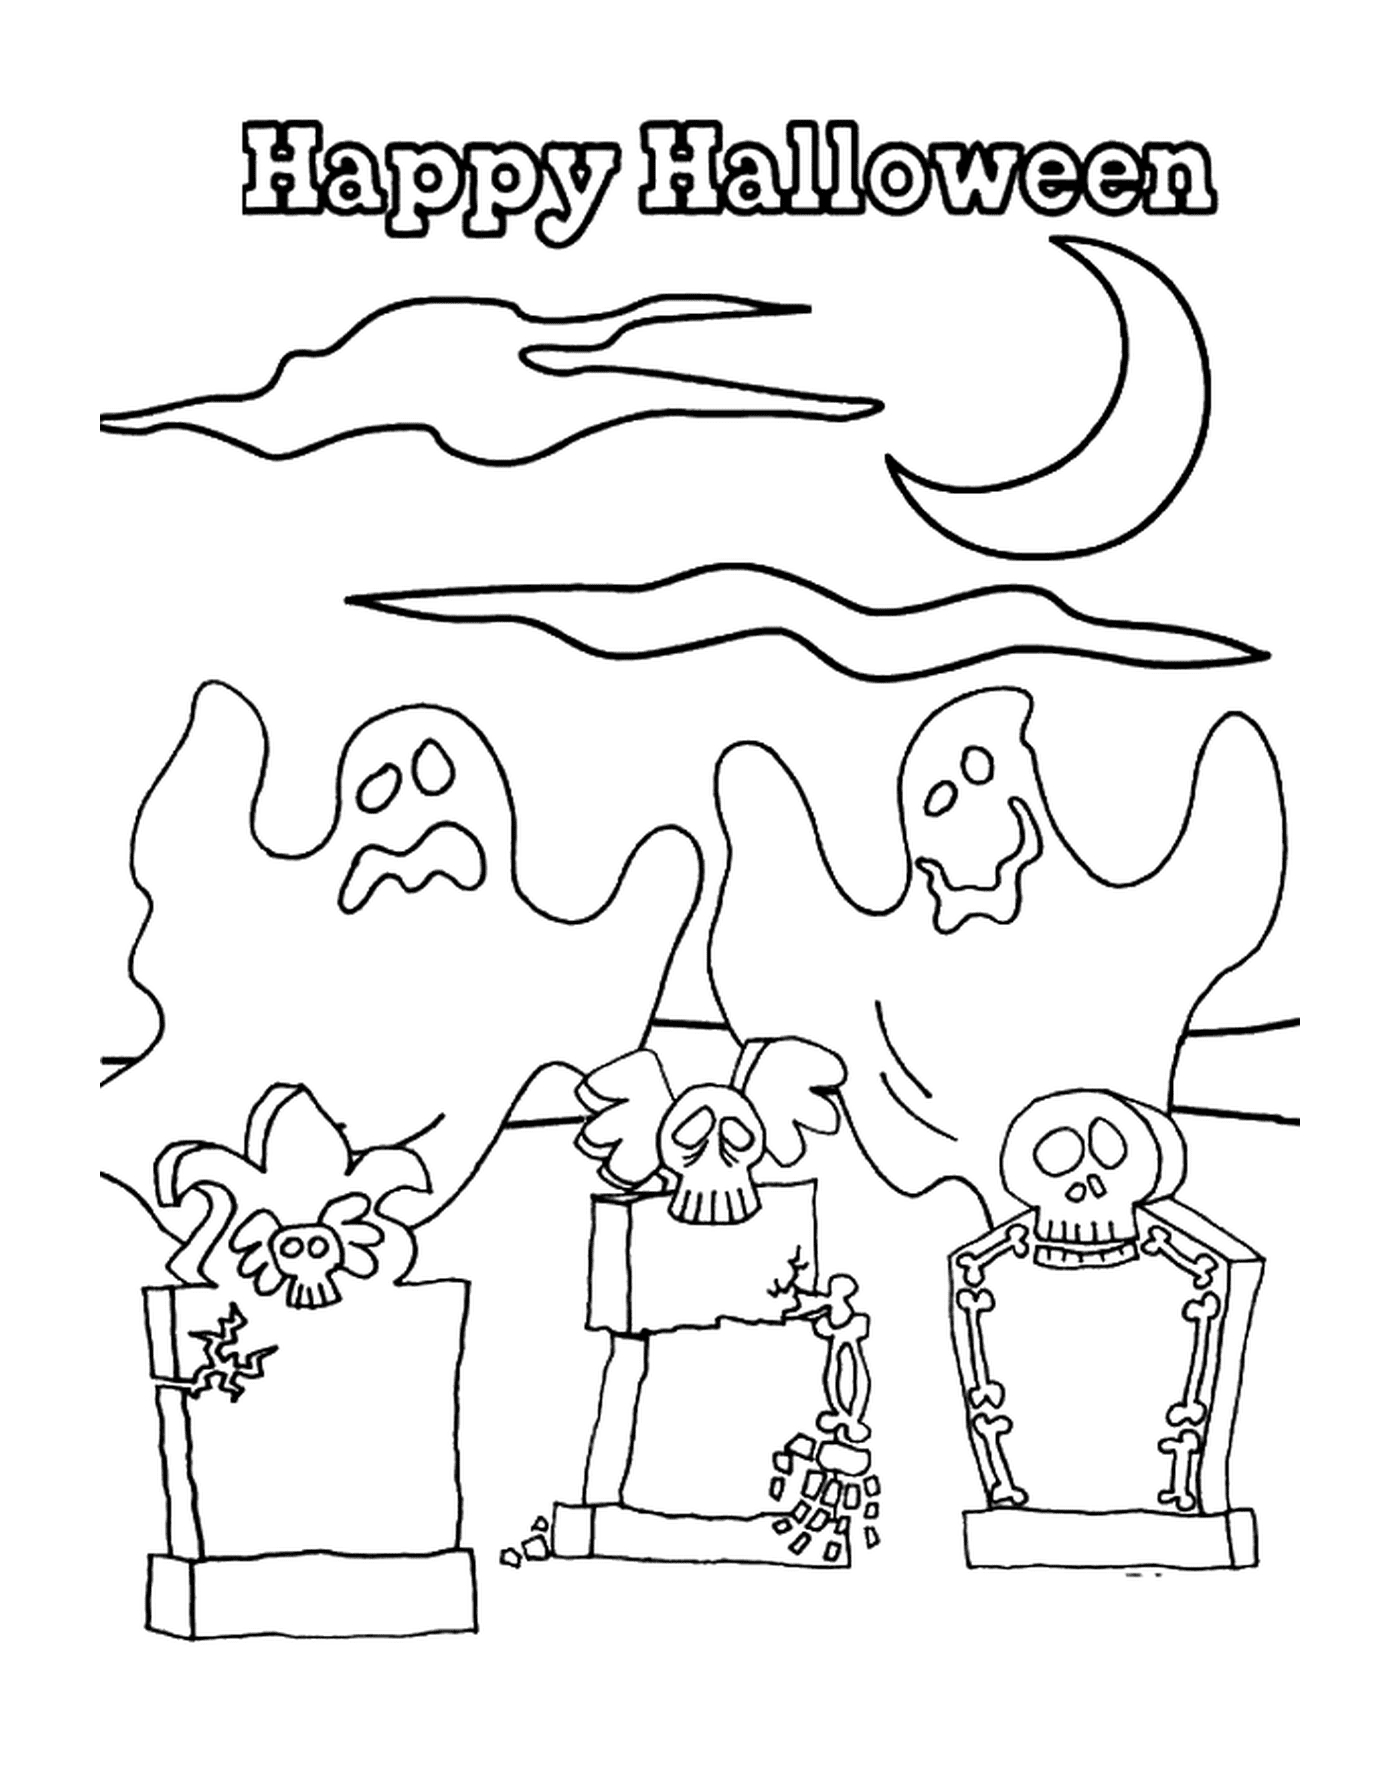 coloriage happy halloween avec des fantomes